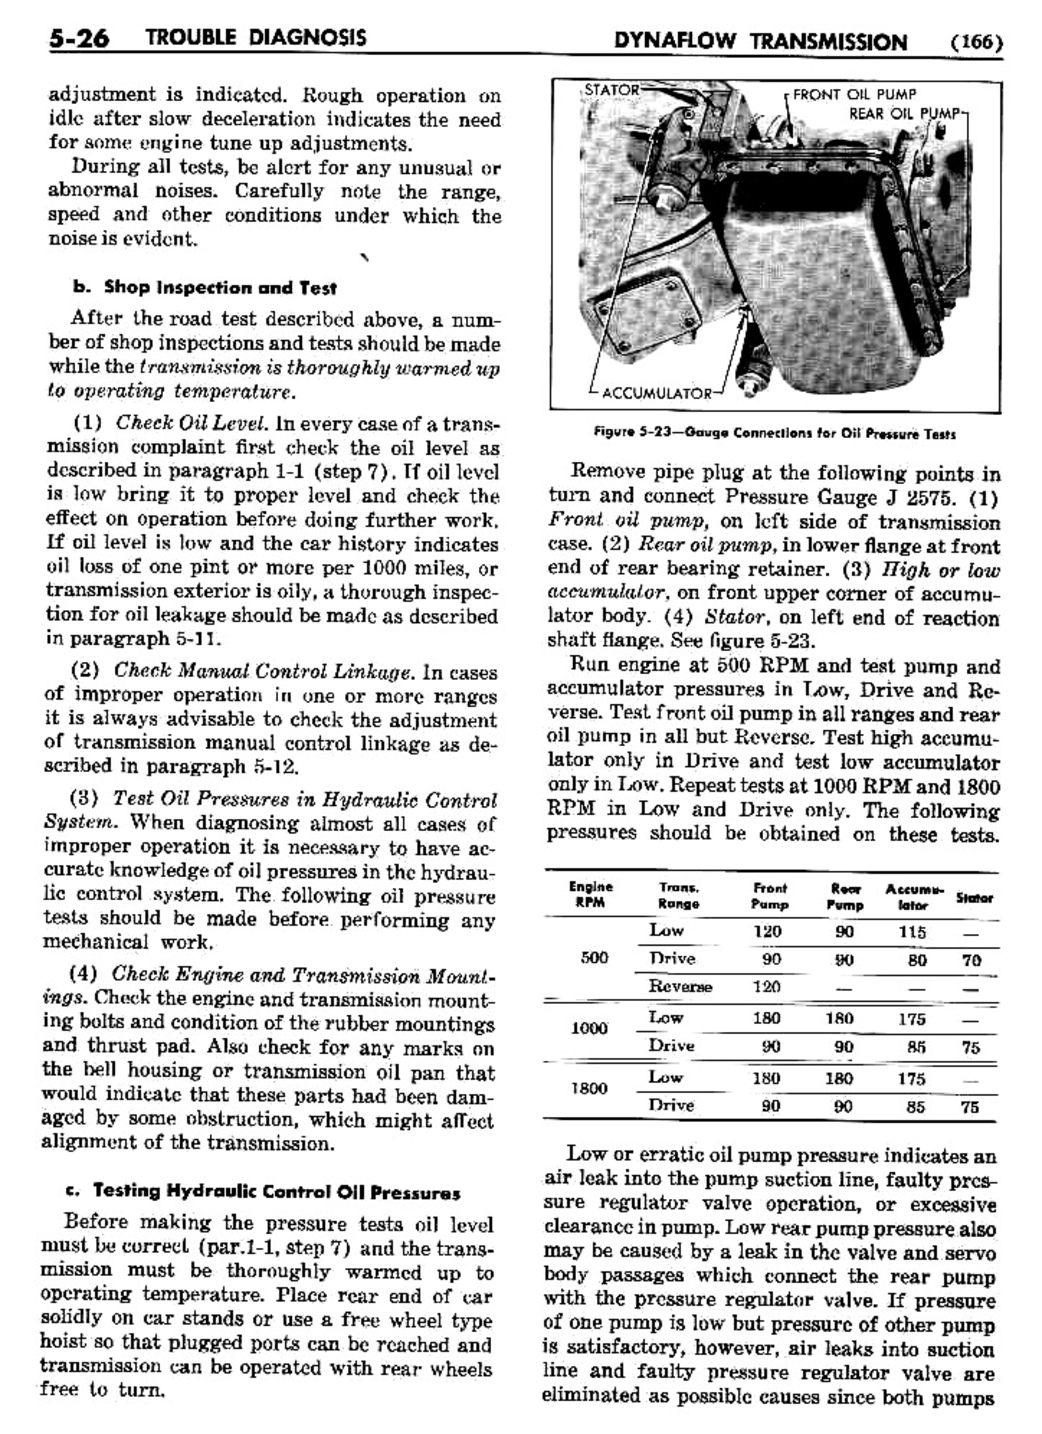 n_06 1955 Buick Shop Manual - Dynaflow-026-026.jpg